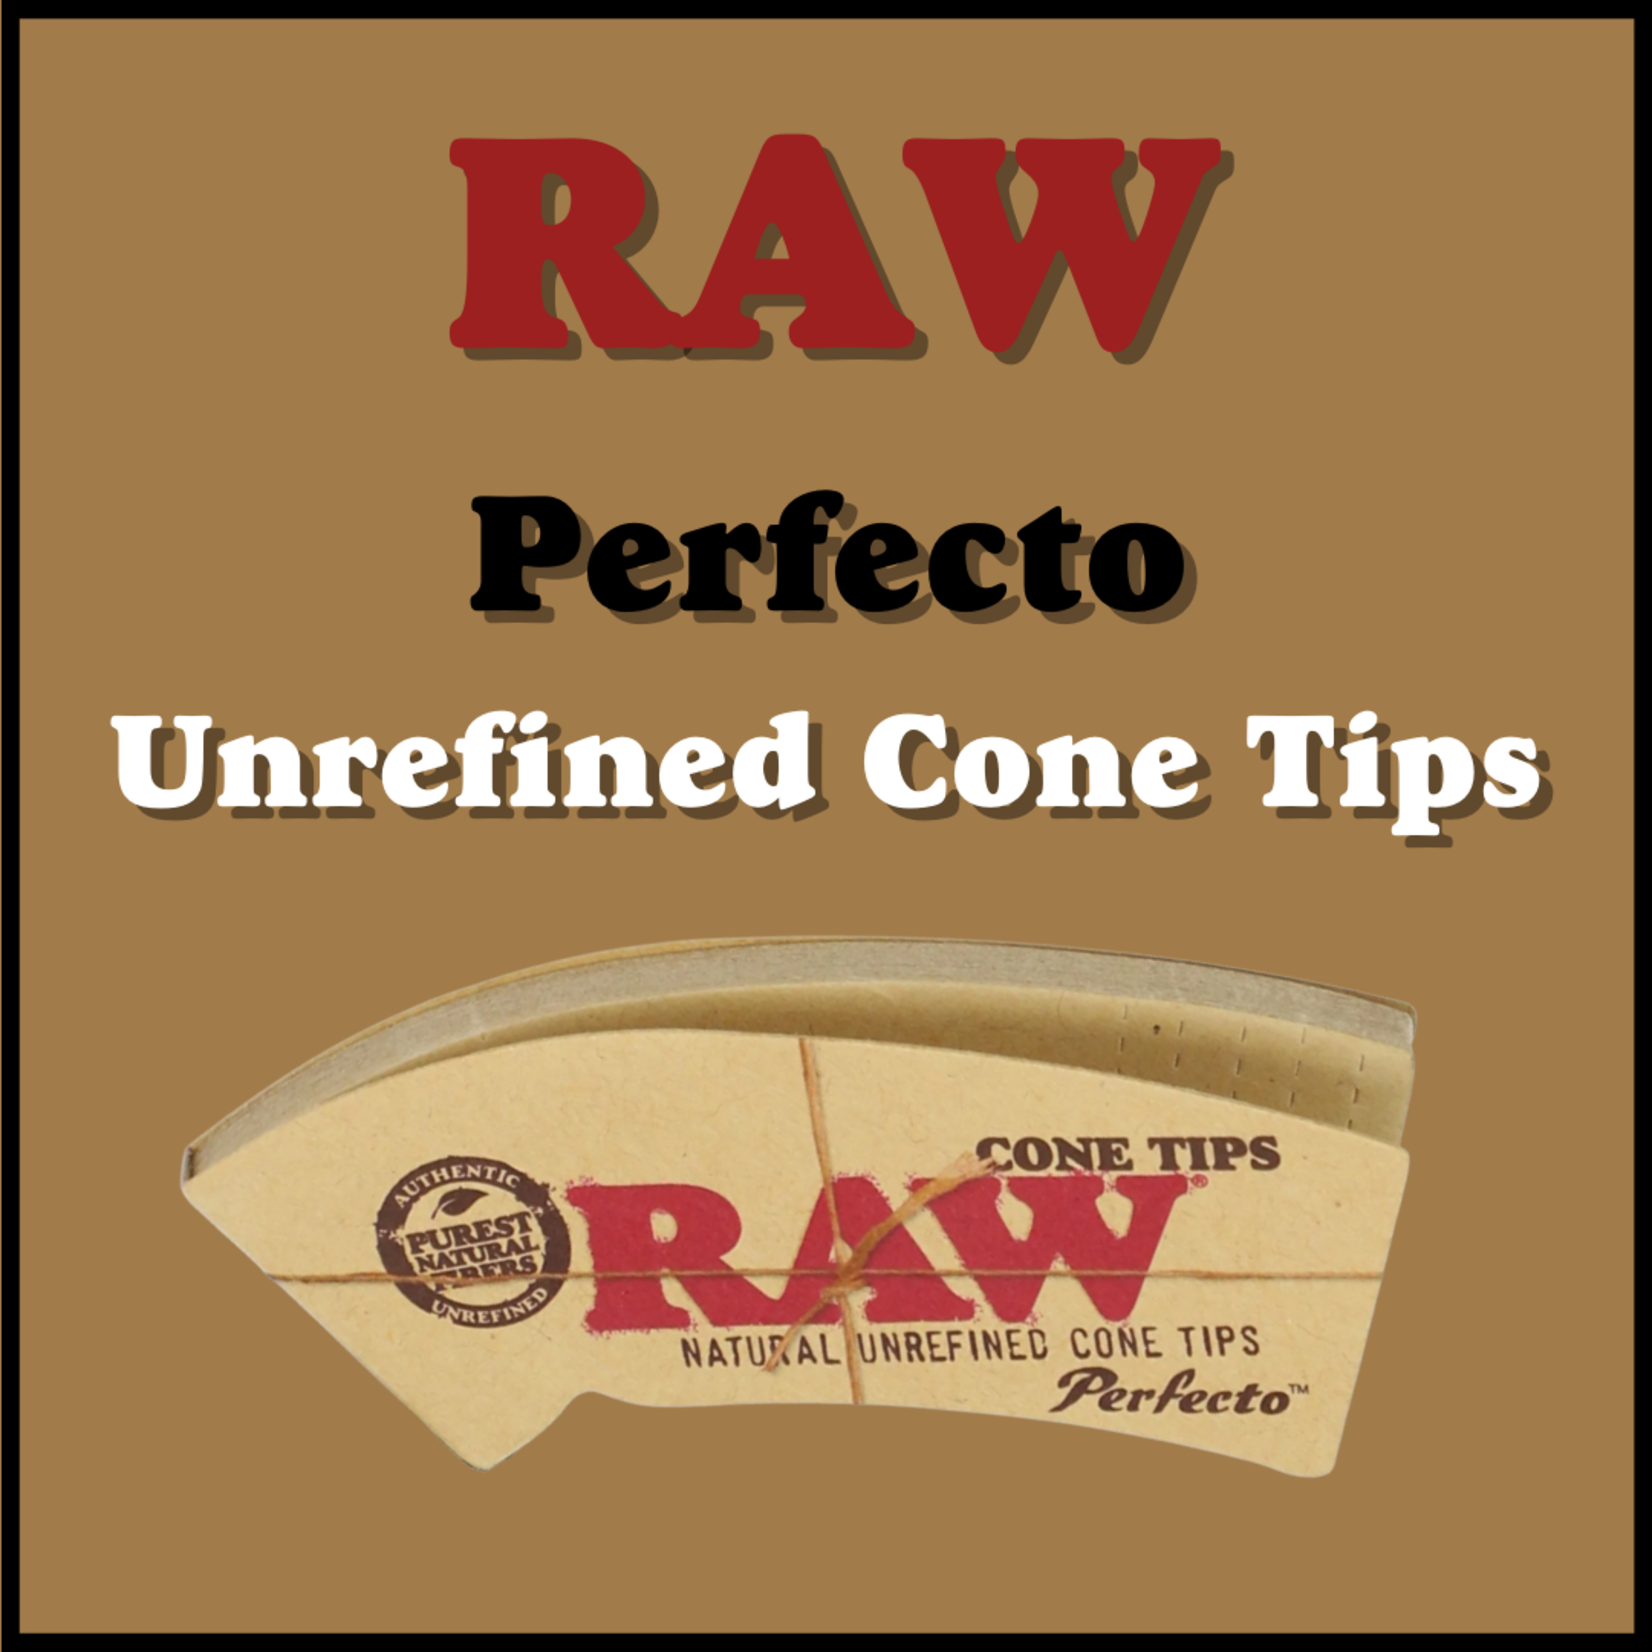 RAW RAW Perfecto: Natural Unrefined Cone Tips